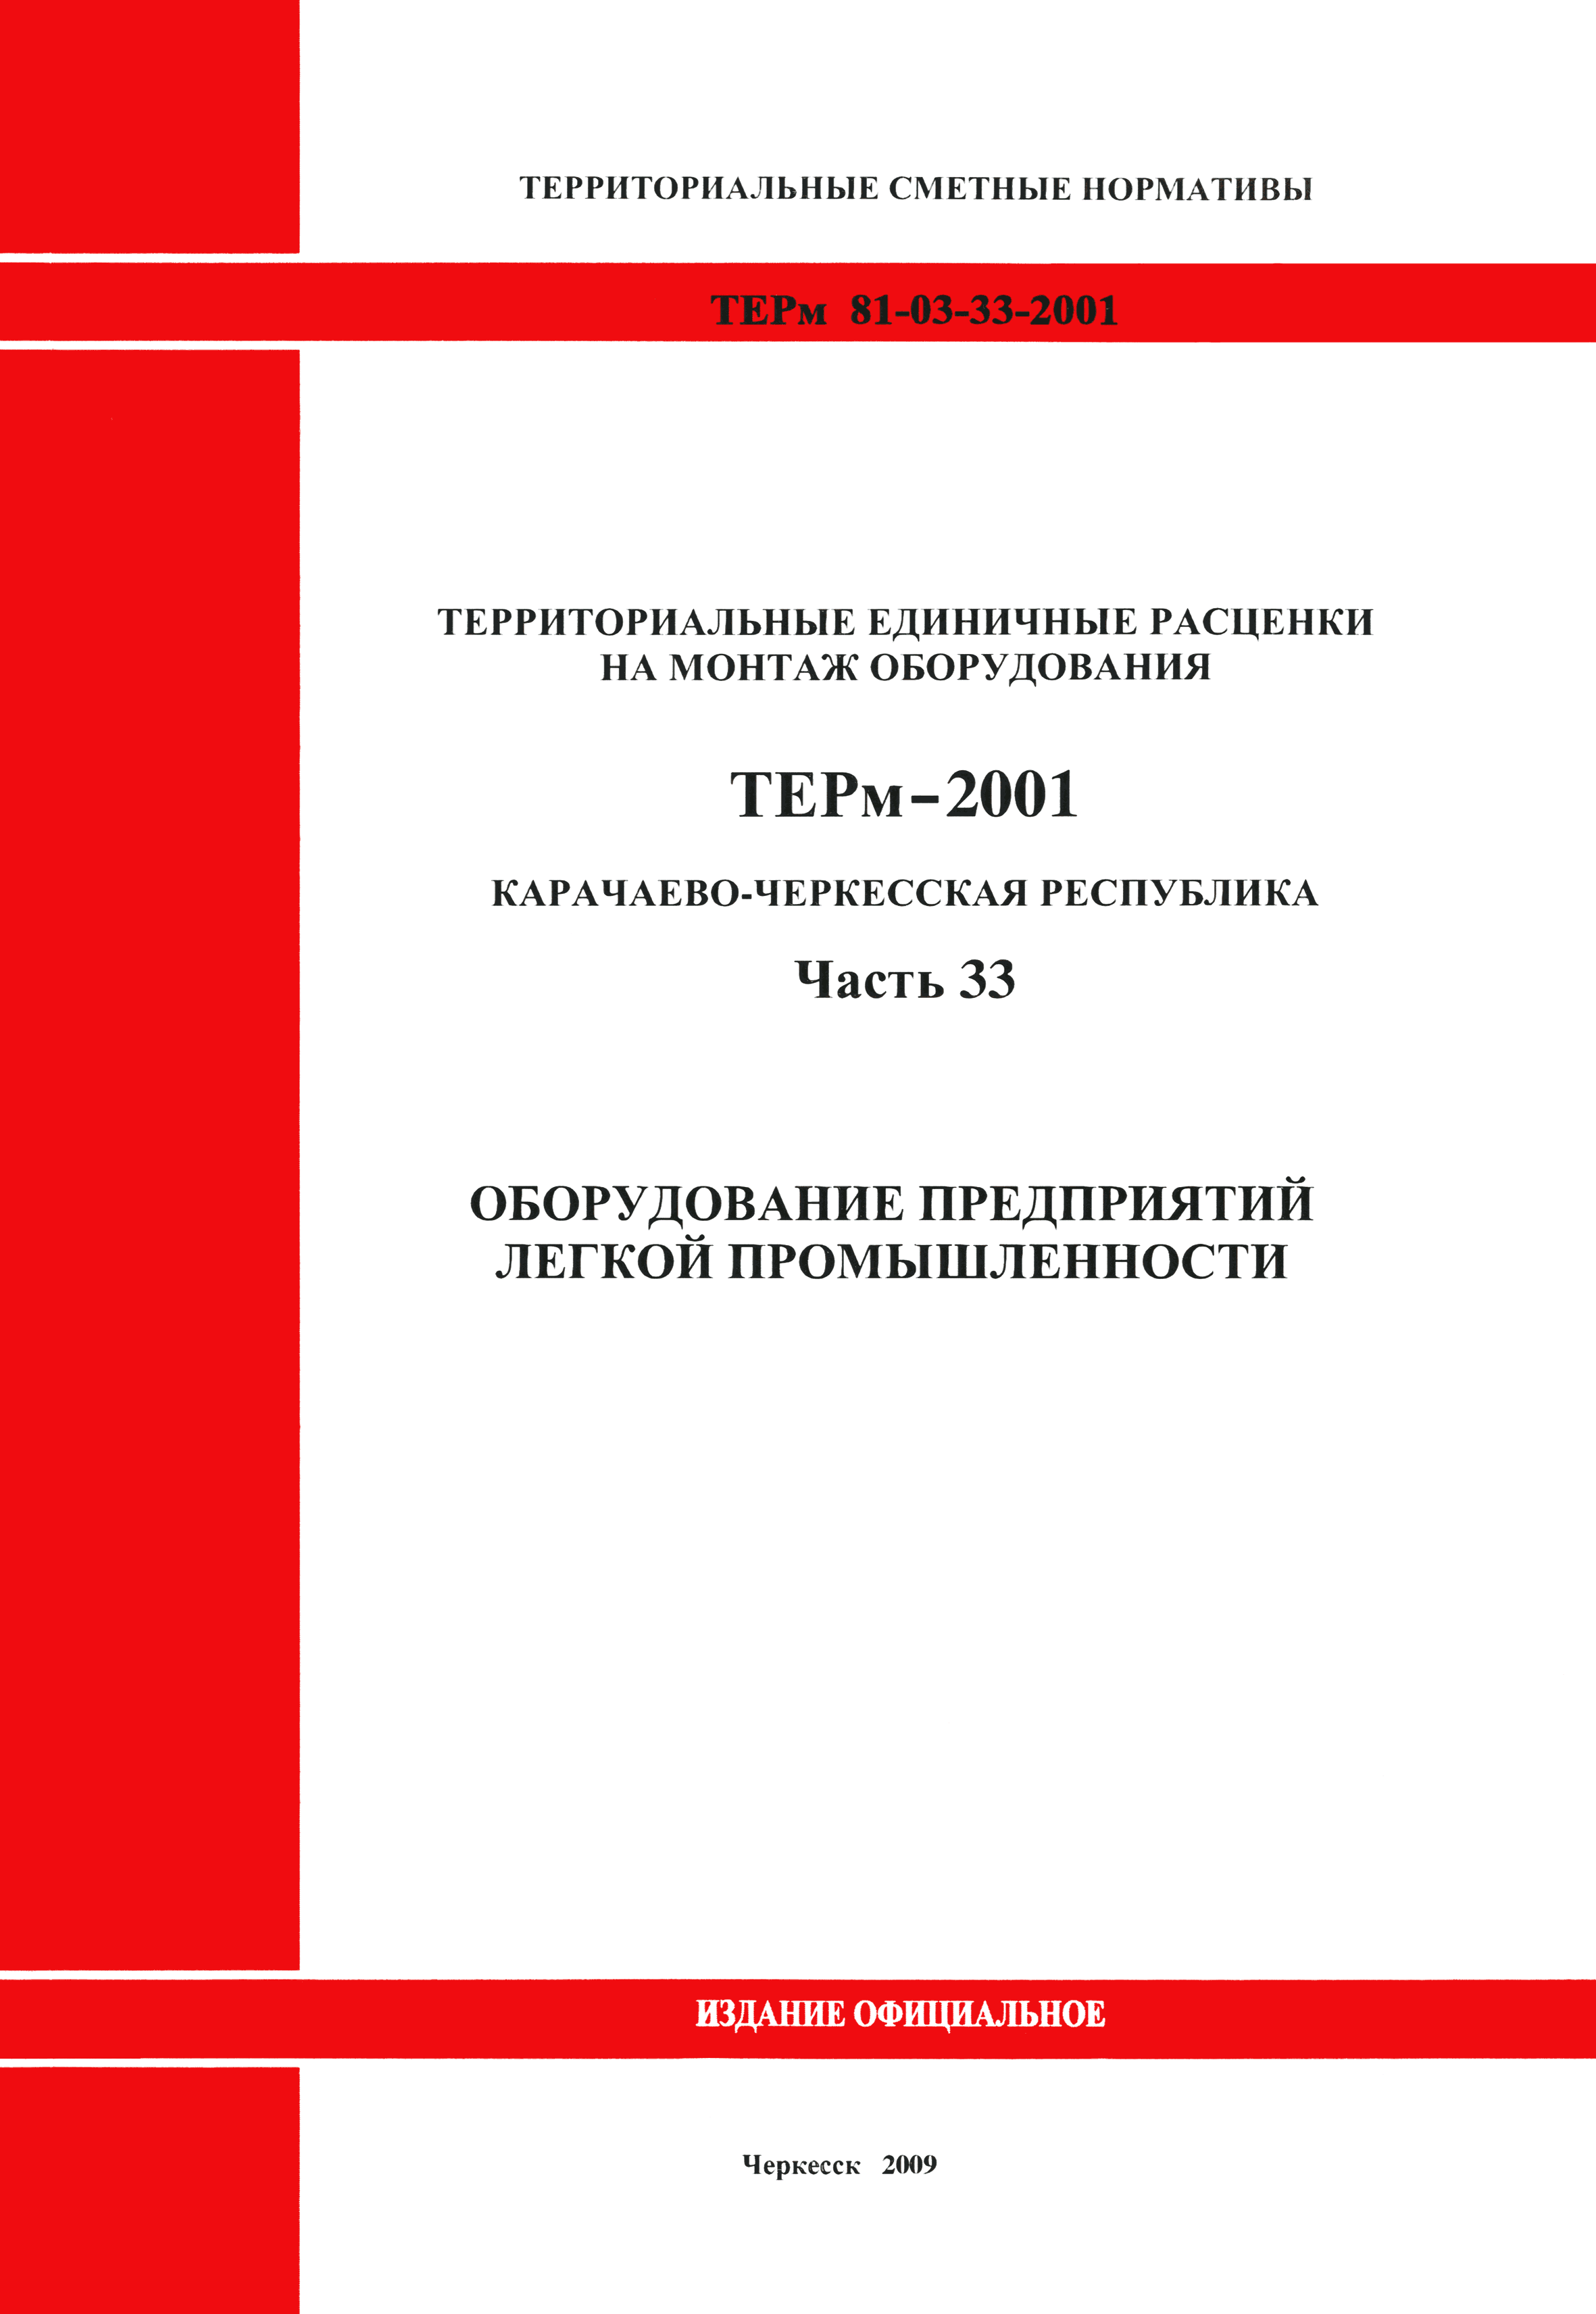 ТЕРм Карачаево-Черкесская Республика 33-2001